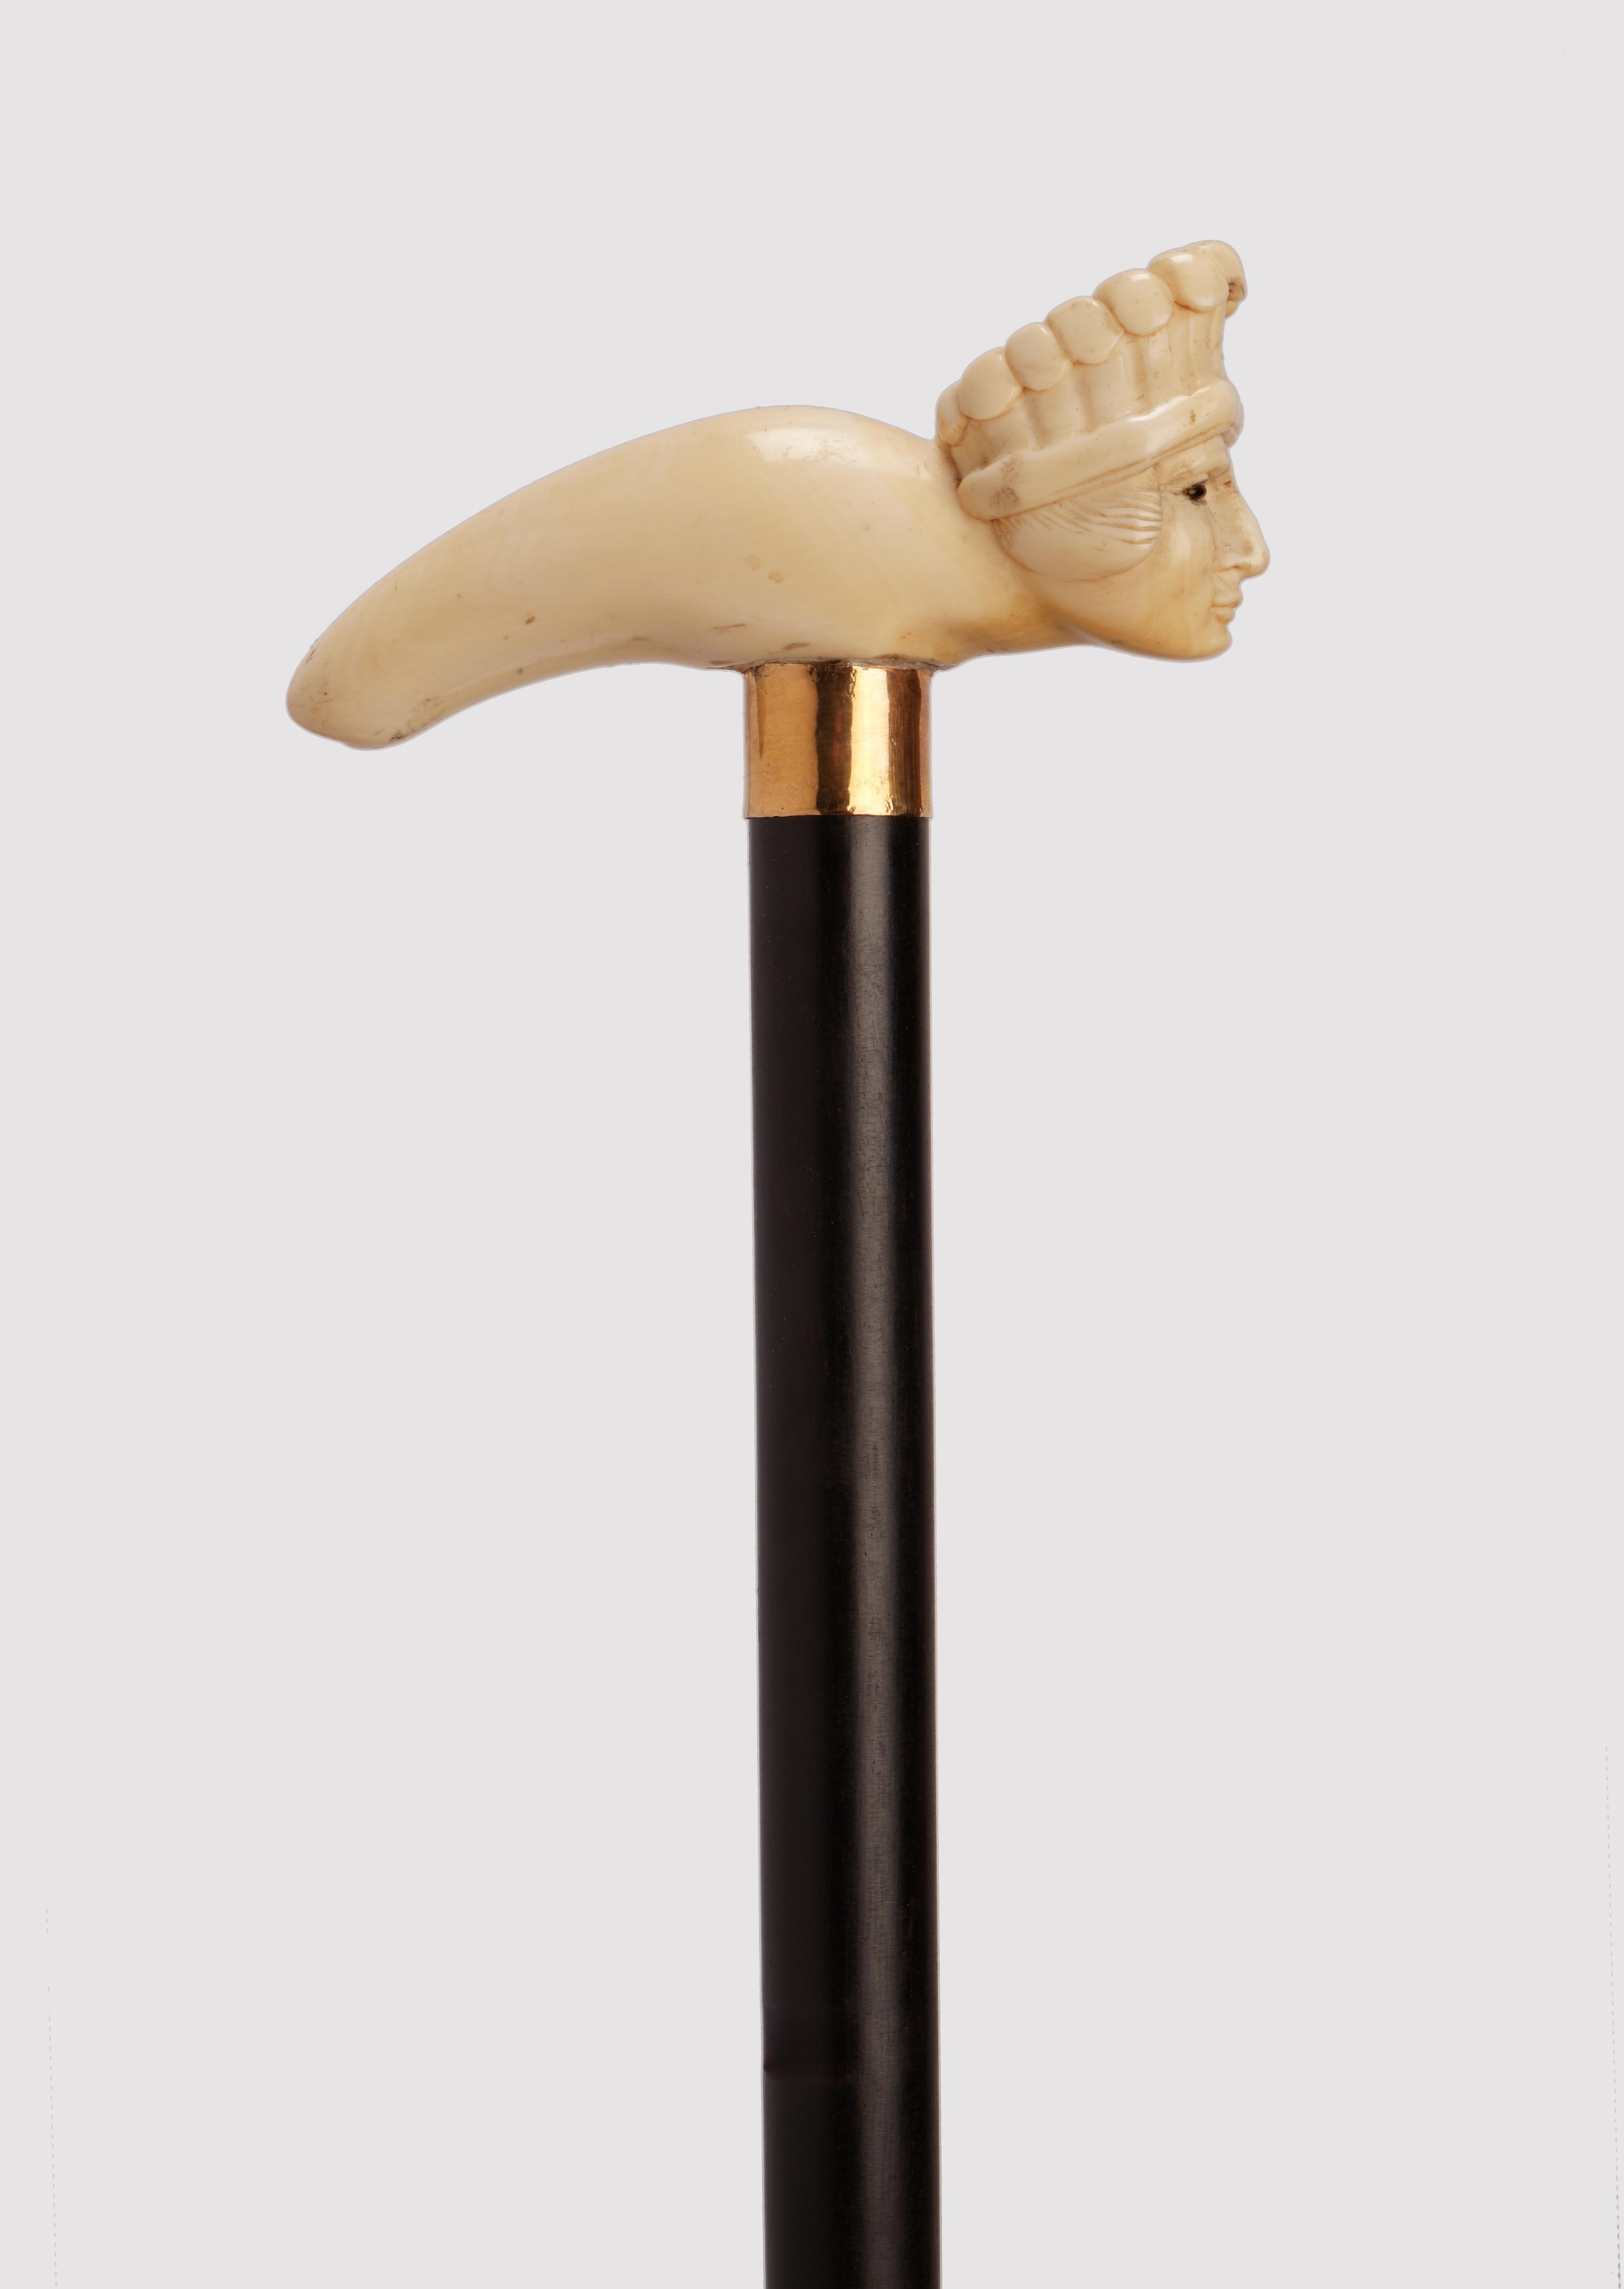 Bâton de marche :  Poignée sculptée en ivoire. La poignée est en forme de béquille, plane dans sa surface, avec la tête d'un chef amérindien central. Yeux en verre sulfurisé. Manche en bois d'ébène. Anneau en argent doré. Virole en ivoire.